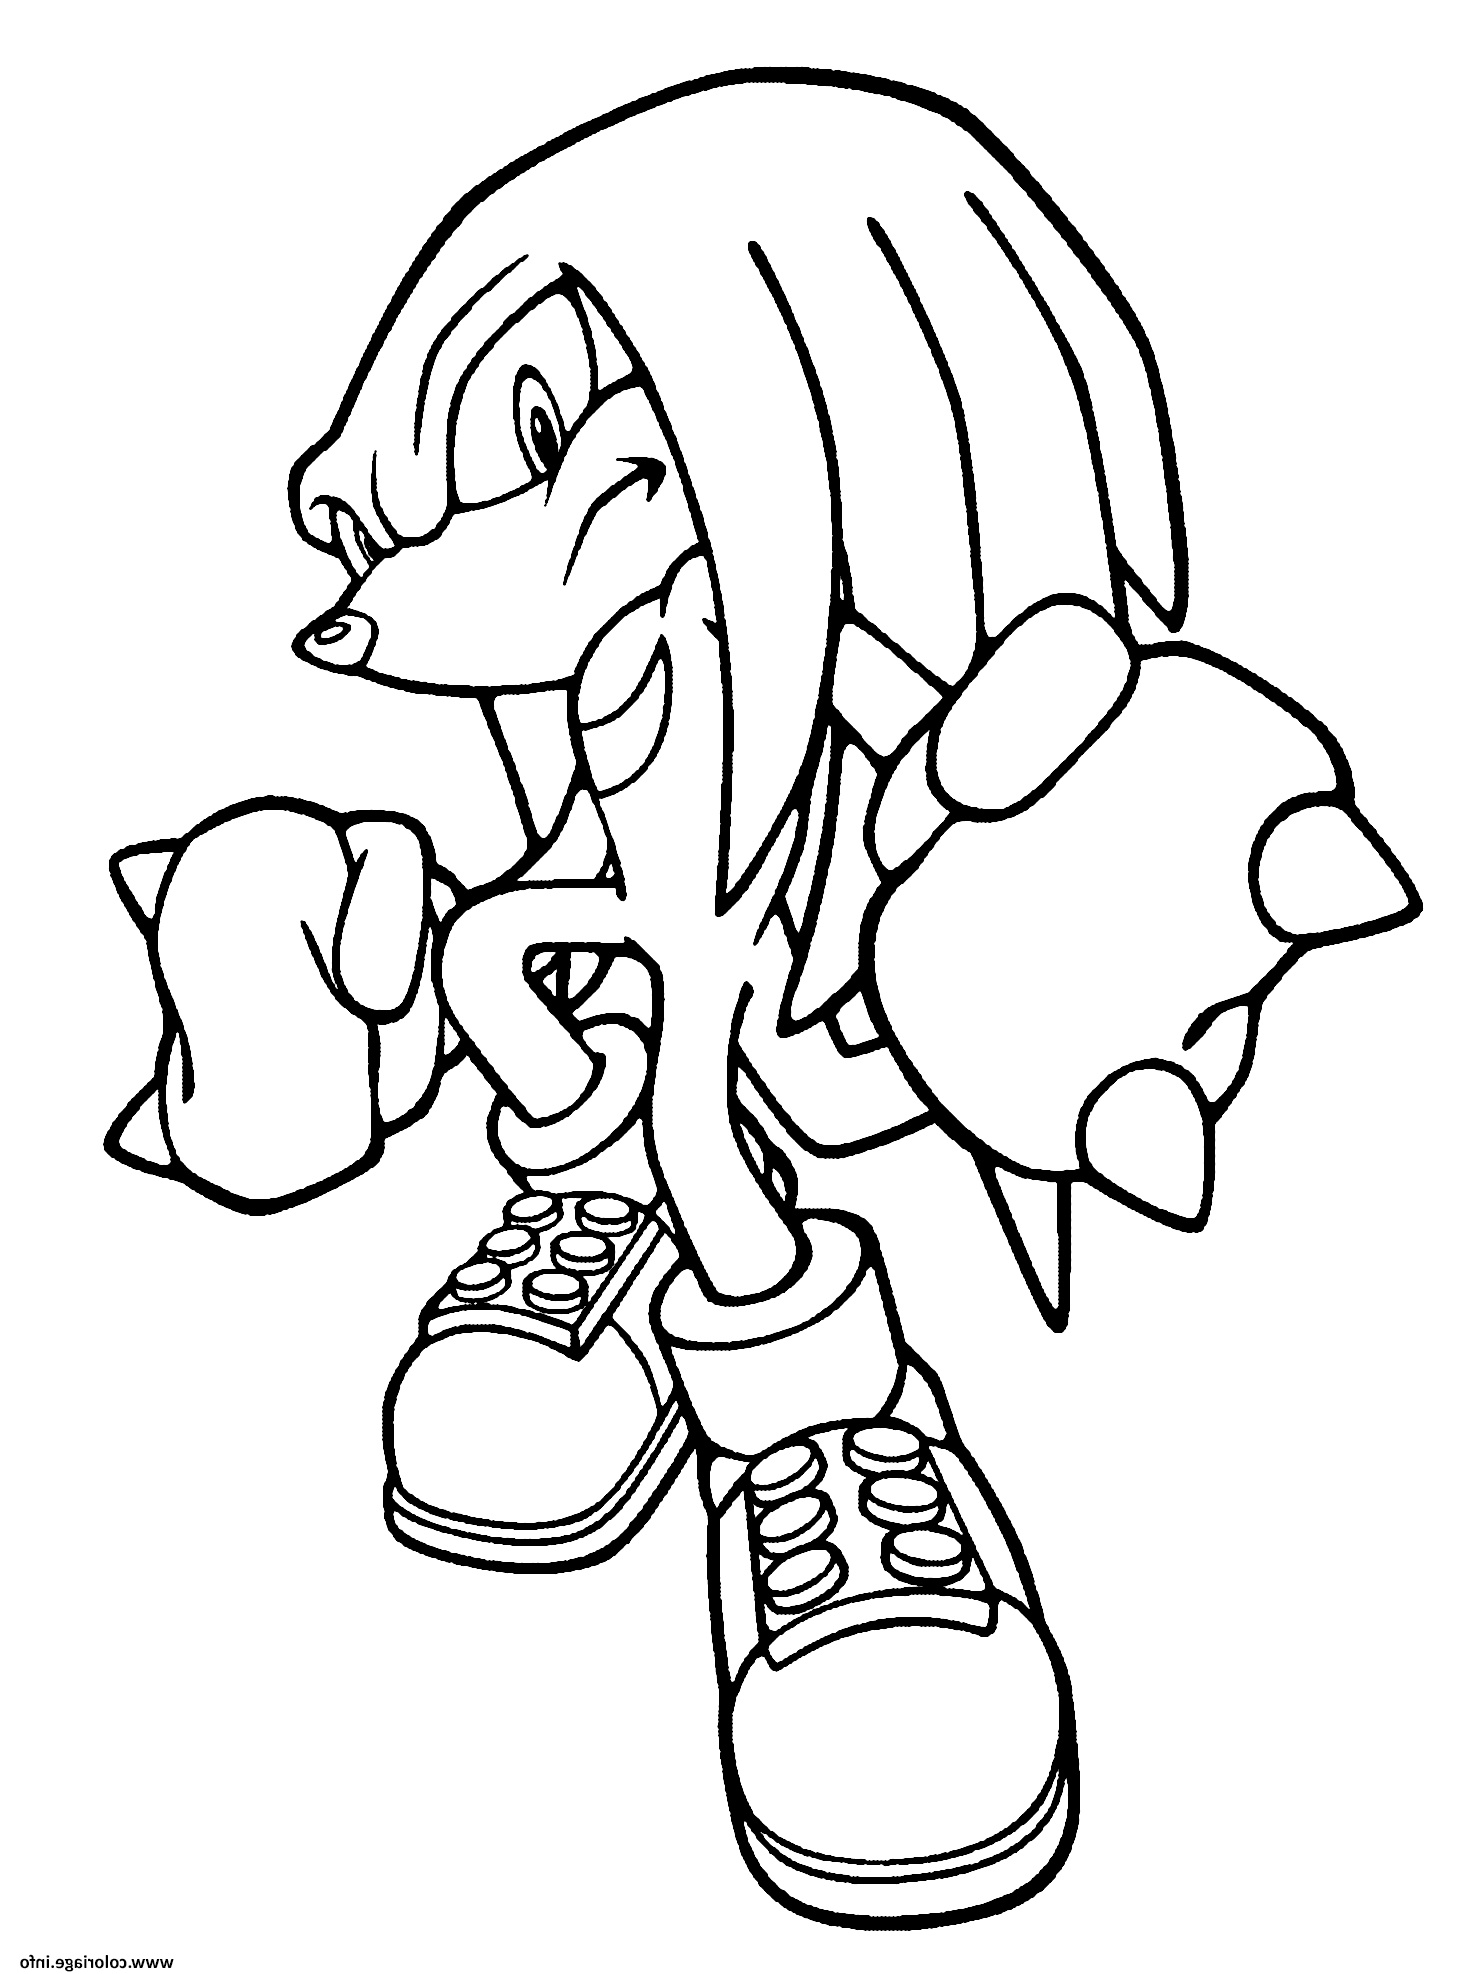 Sonic A Colorier Élégant Images Coloriage Knuckles sonic Dessin